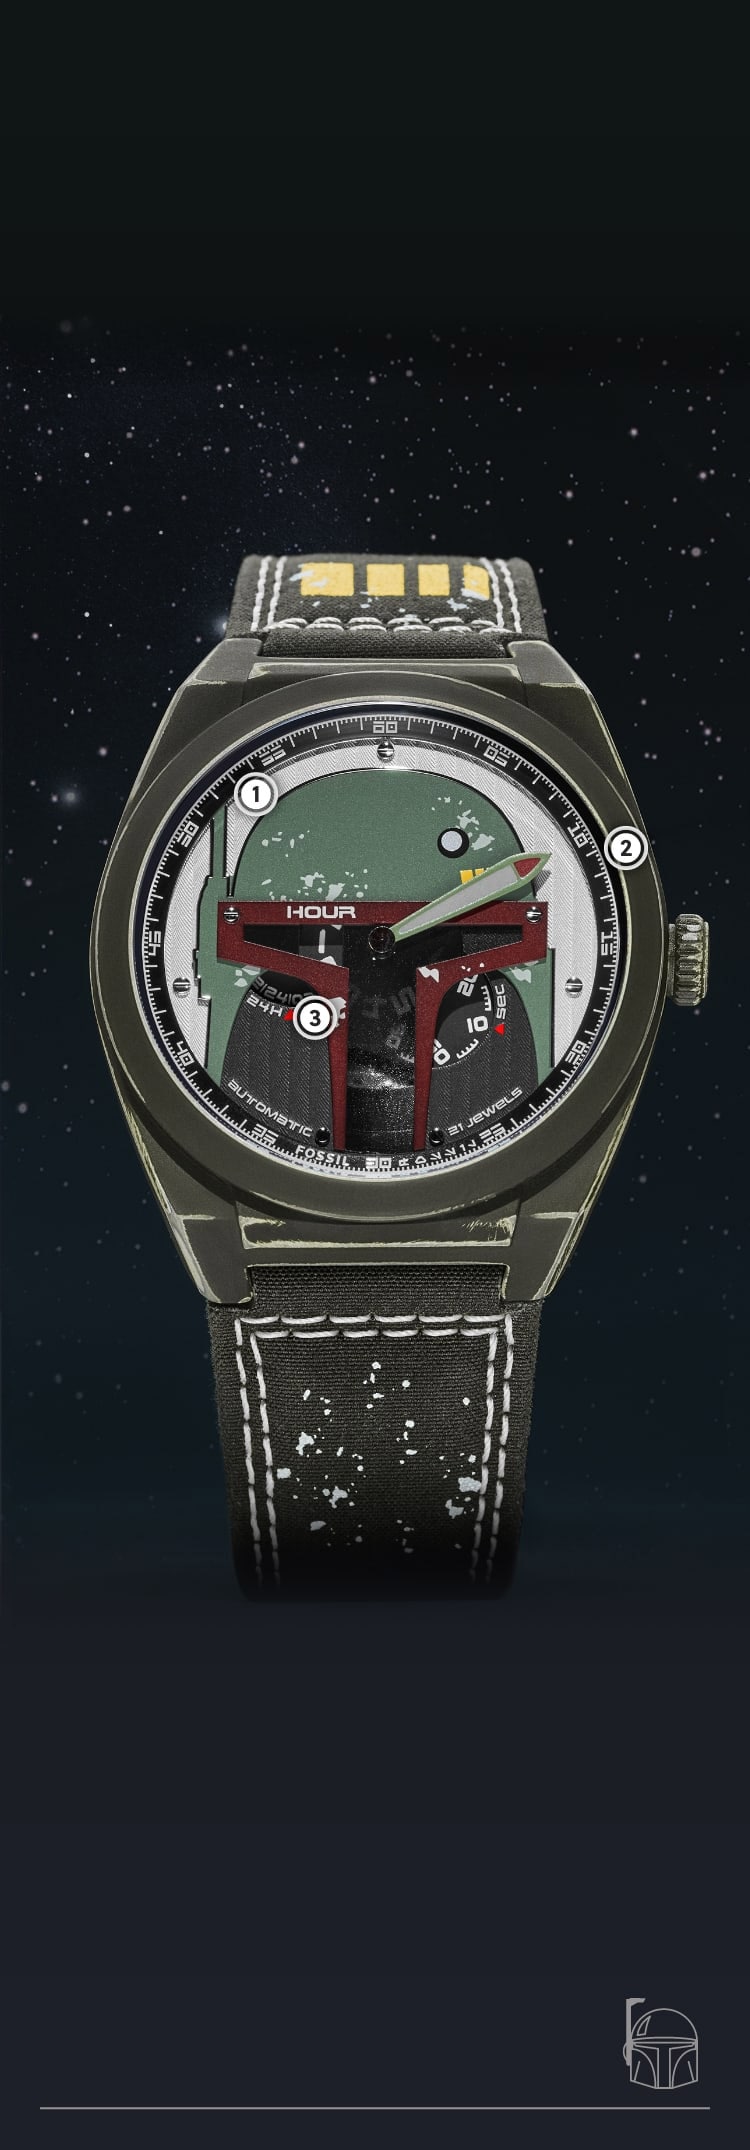 Primo piano di un orologio verde oliva effetto invecchiato con un casco tridimensionale di Boba Fett sul quadrante.